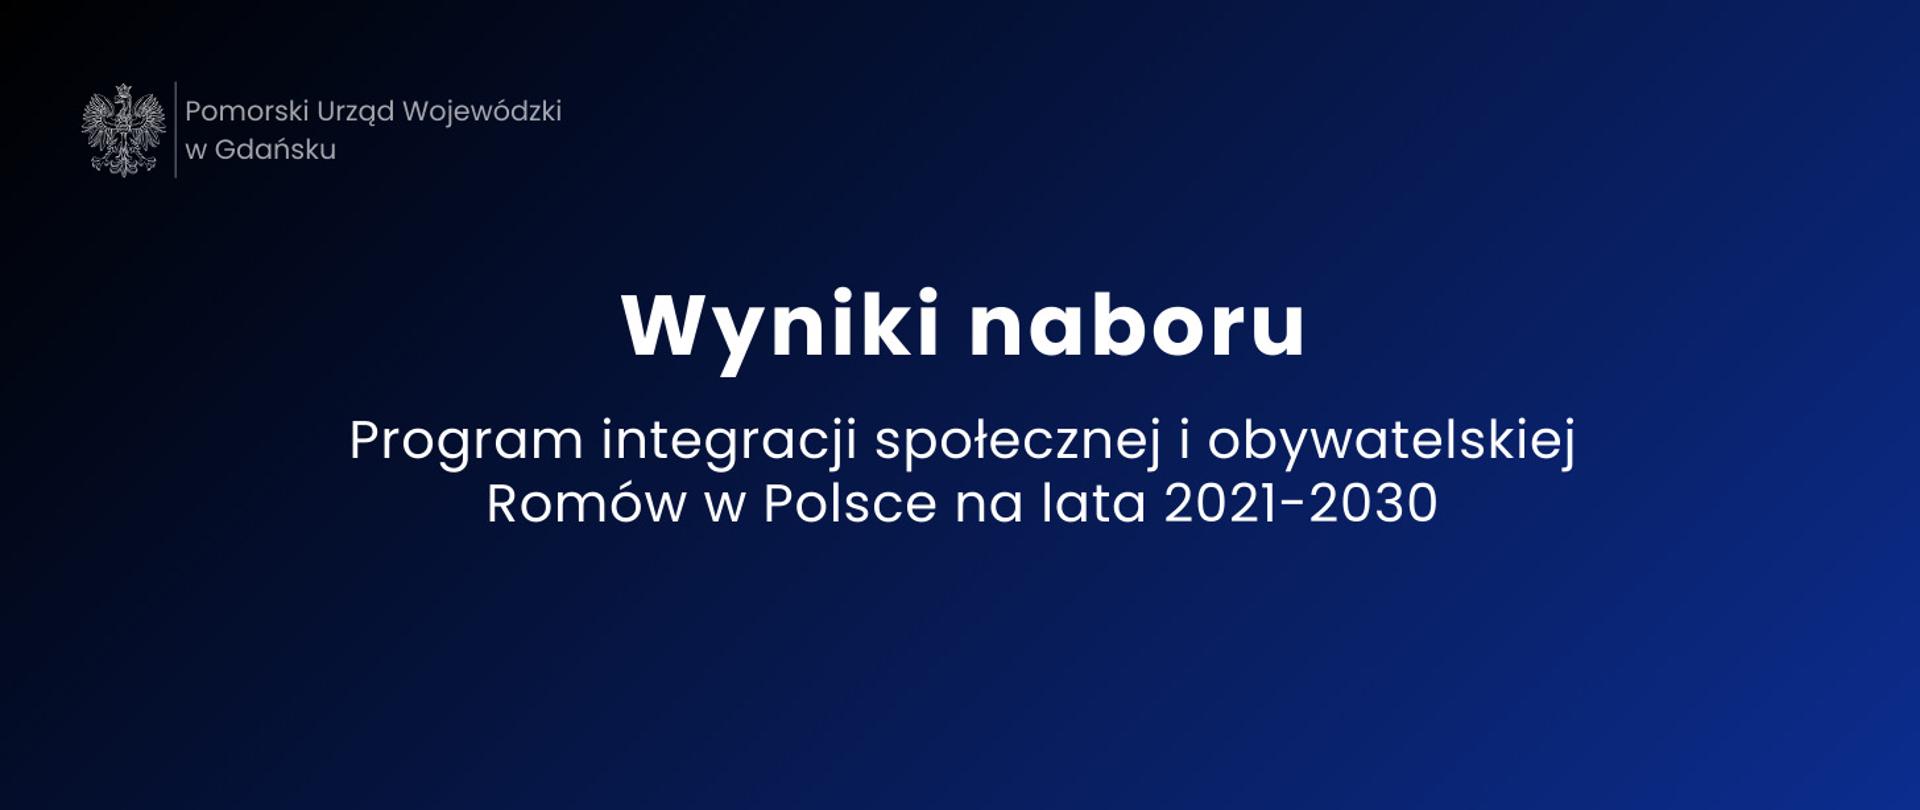 granatowa prostokątna tablica, biały napis wyniki naboru Program integracji społecznej i obywatelskiej Romów w Polsce na lata 2021-2030 